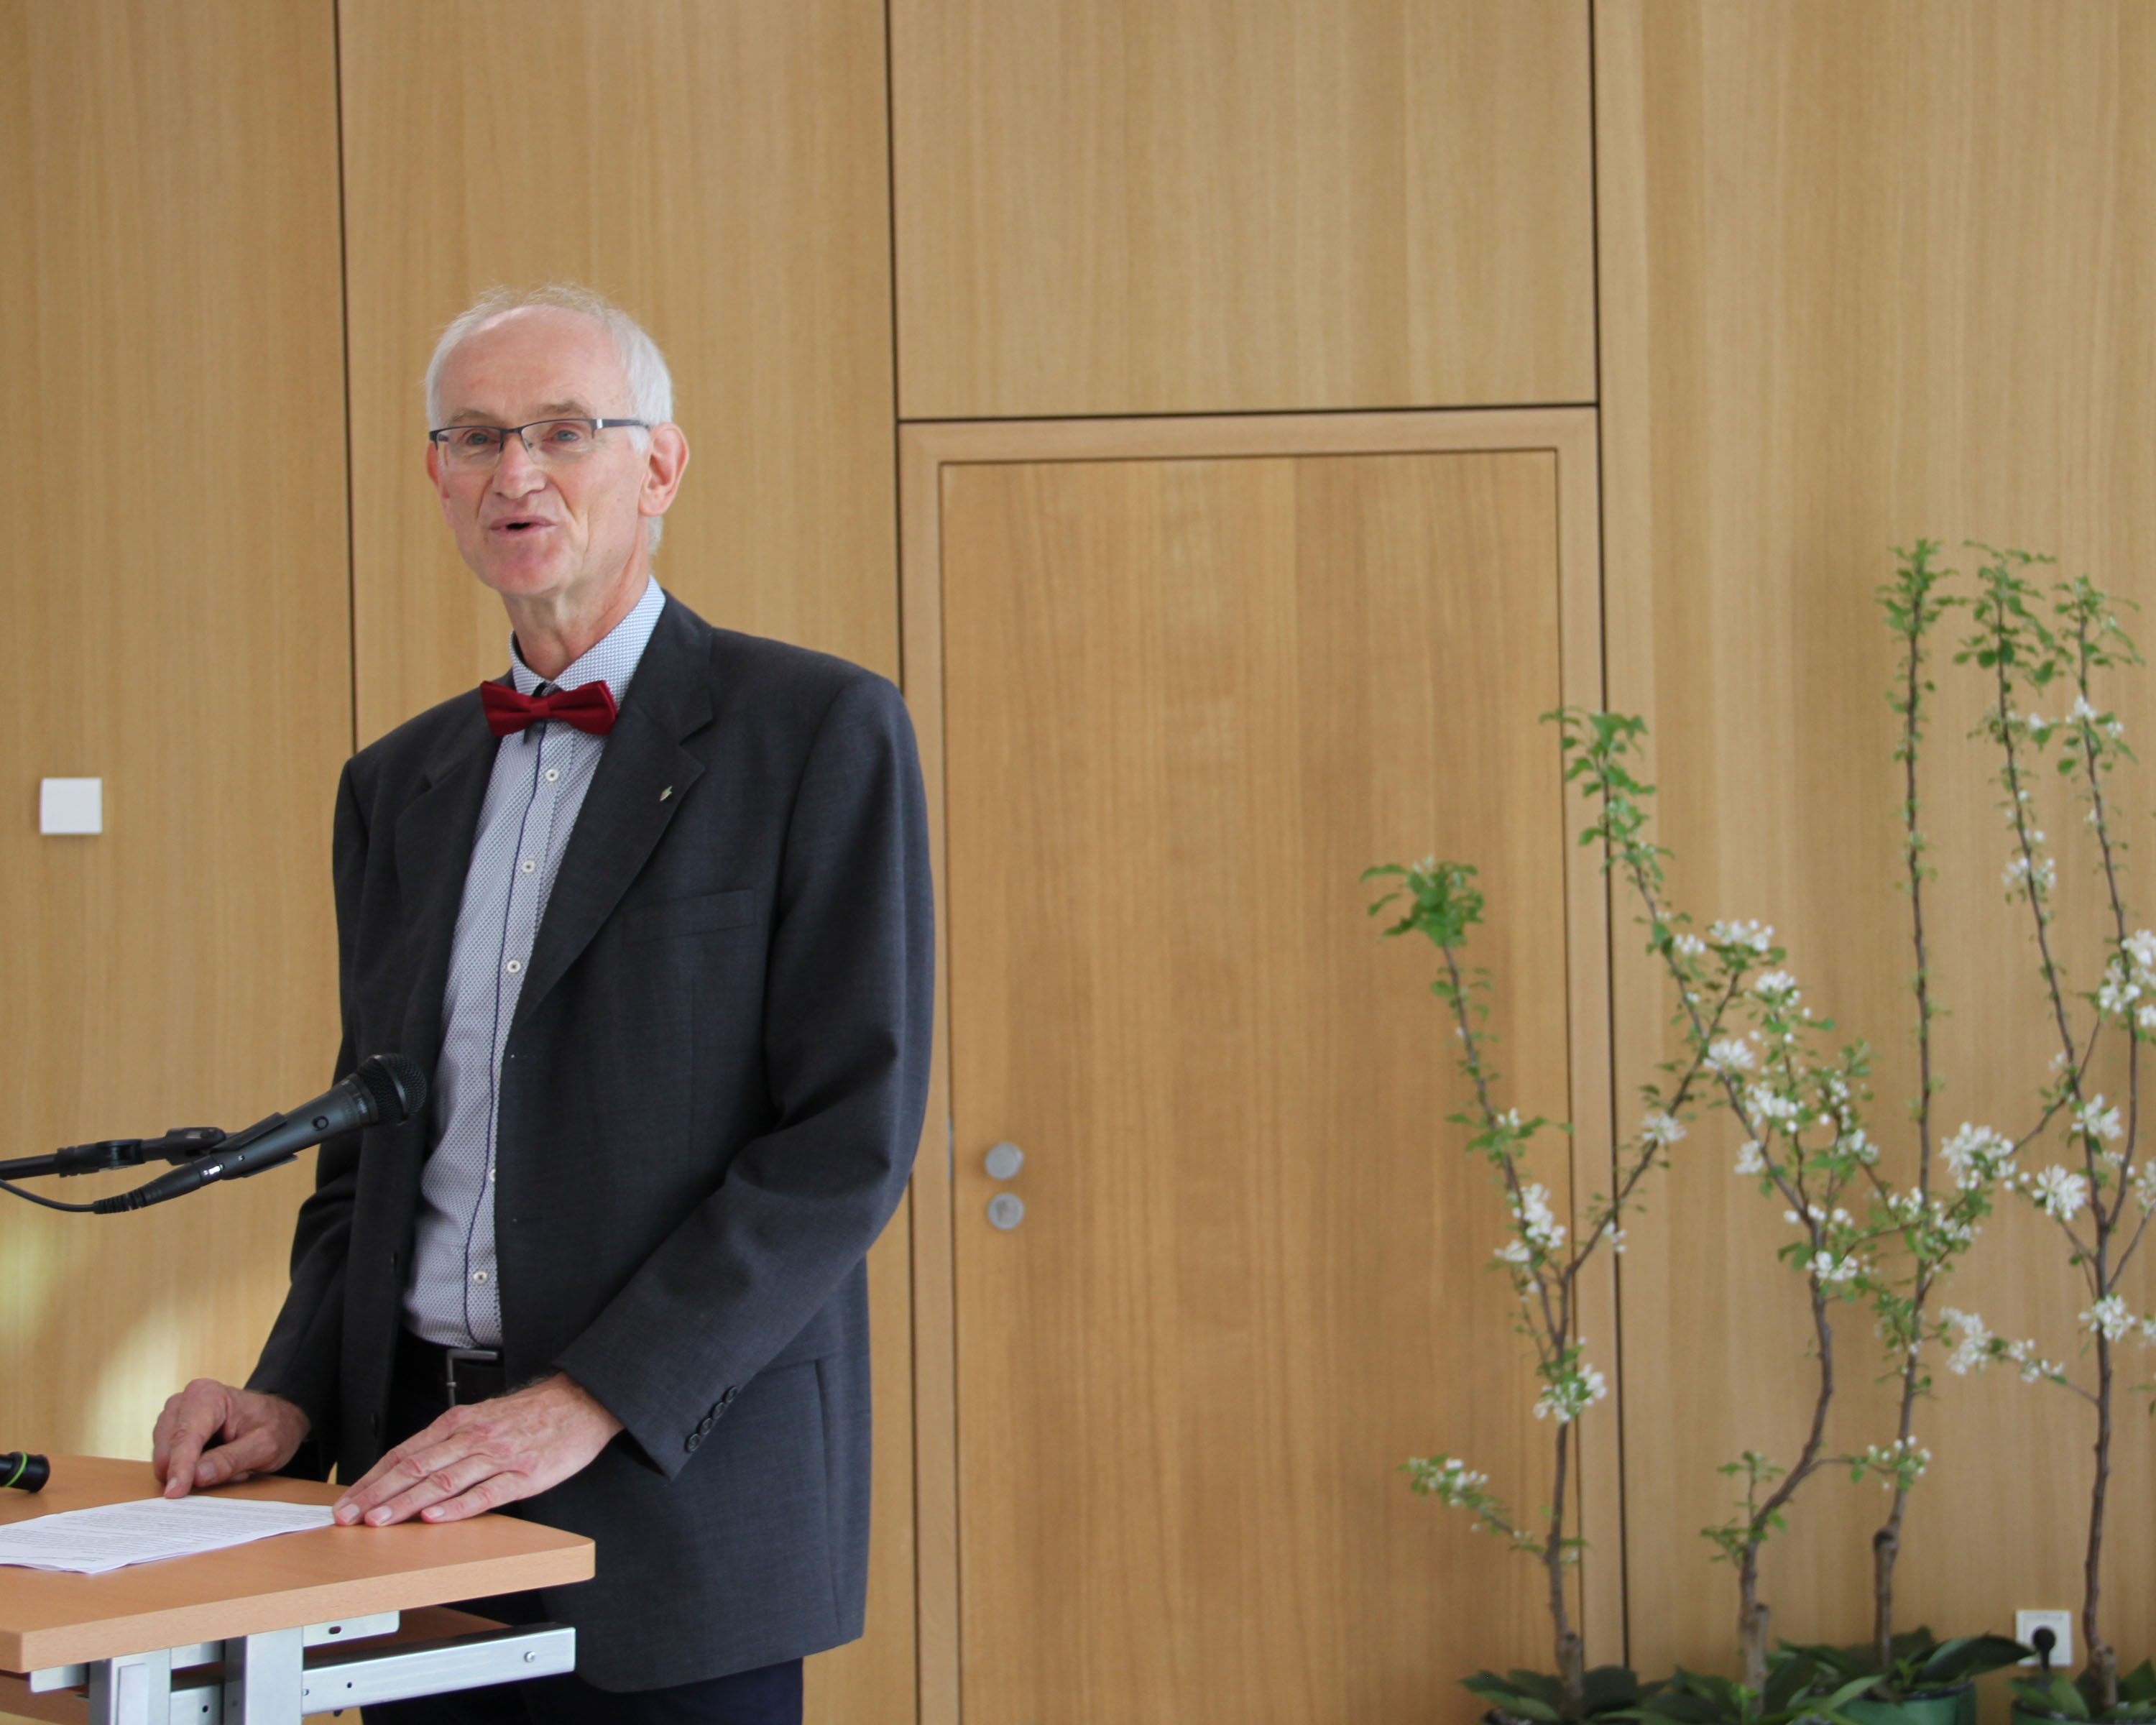 Institutsleiter Jelkmann begrüßt Gäste und Mitarbeitende des Instituts. © Leefken/JKI